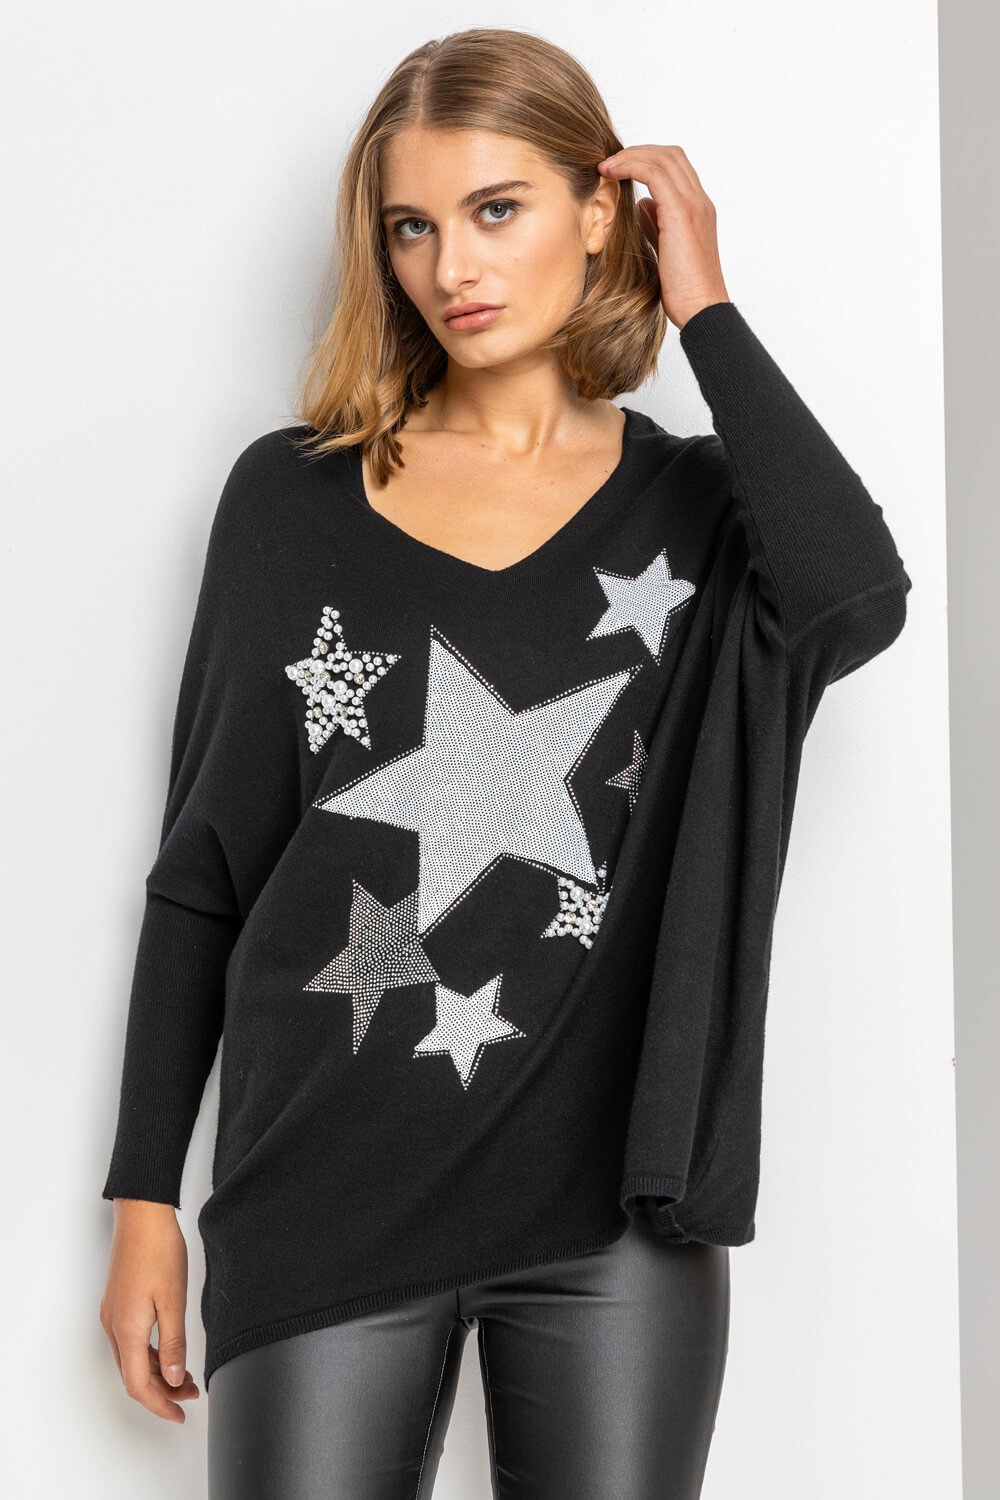 Sparkle Star Embellished Comfy Top